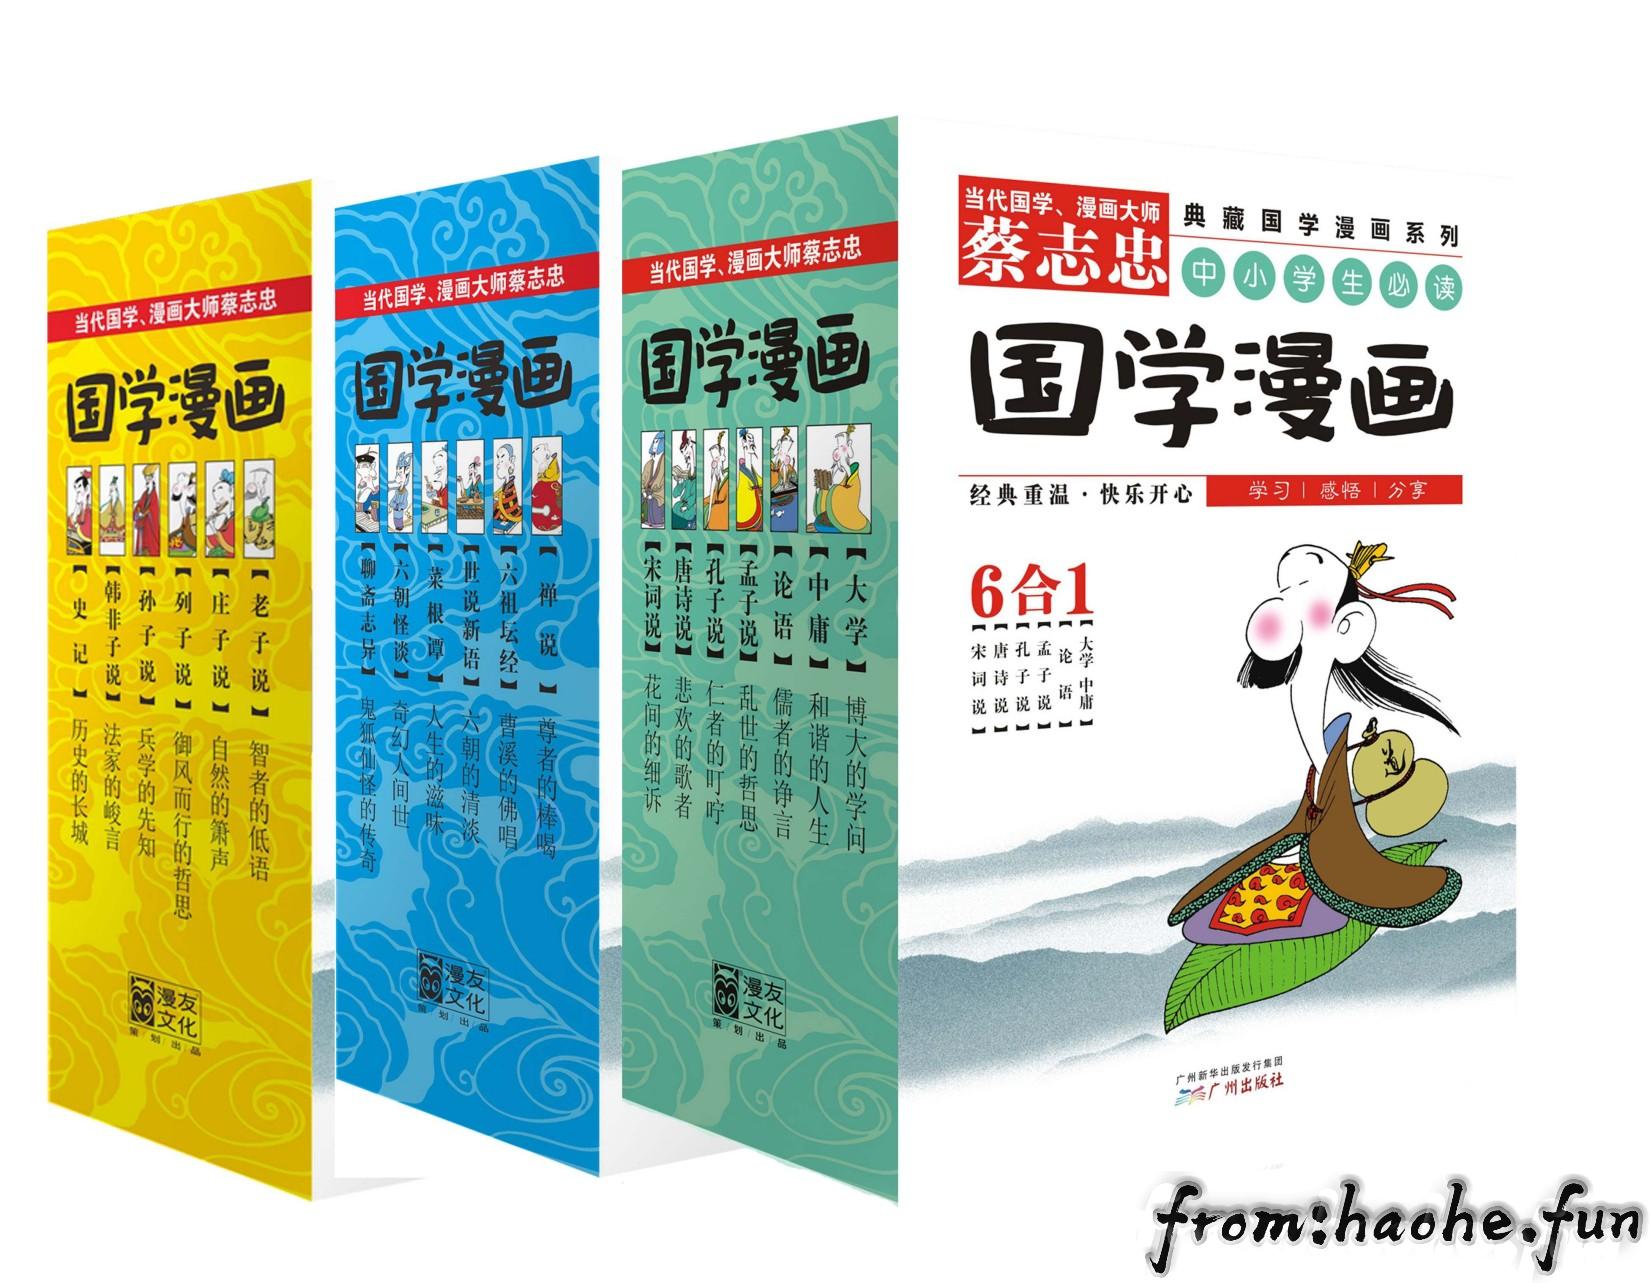 蔡志忠典藏国学漫画系列大全集 套装共18册精排版 Epup Mobi Pdf Haohe Fun 何浩的个人网站何浩的个人网站